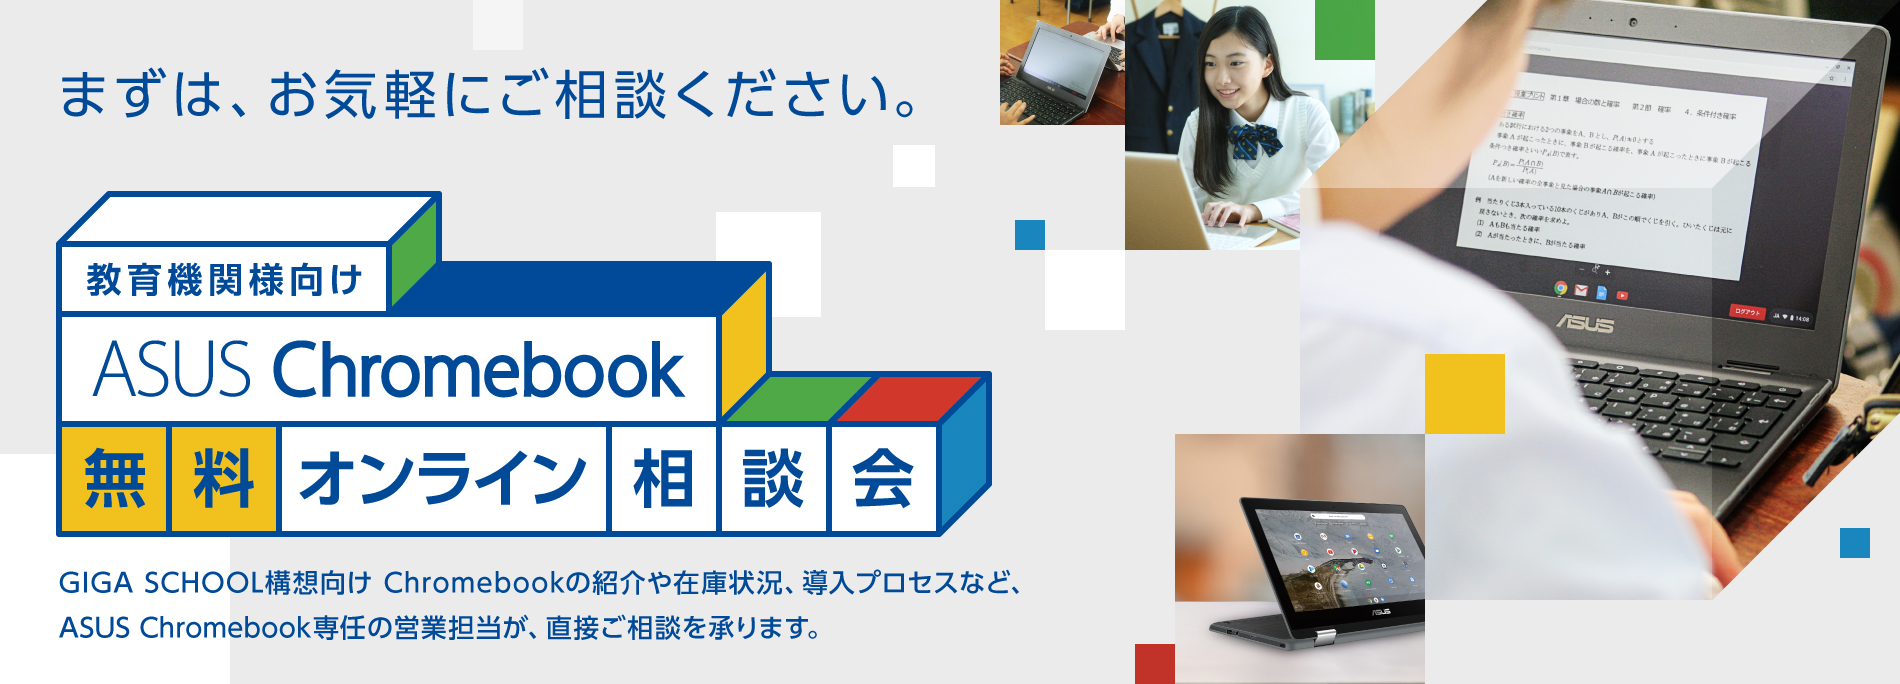 教育機関様向け ASUS Chromebook 無料オンライン相談会